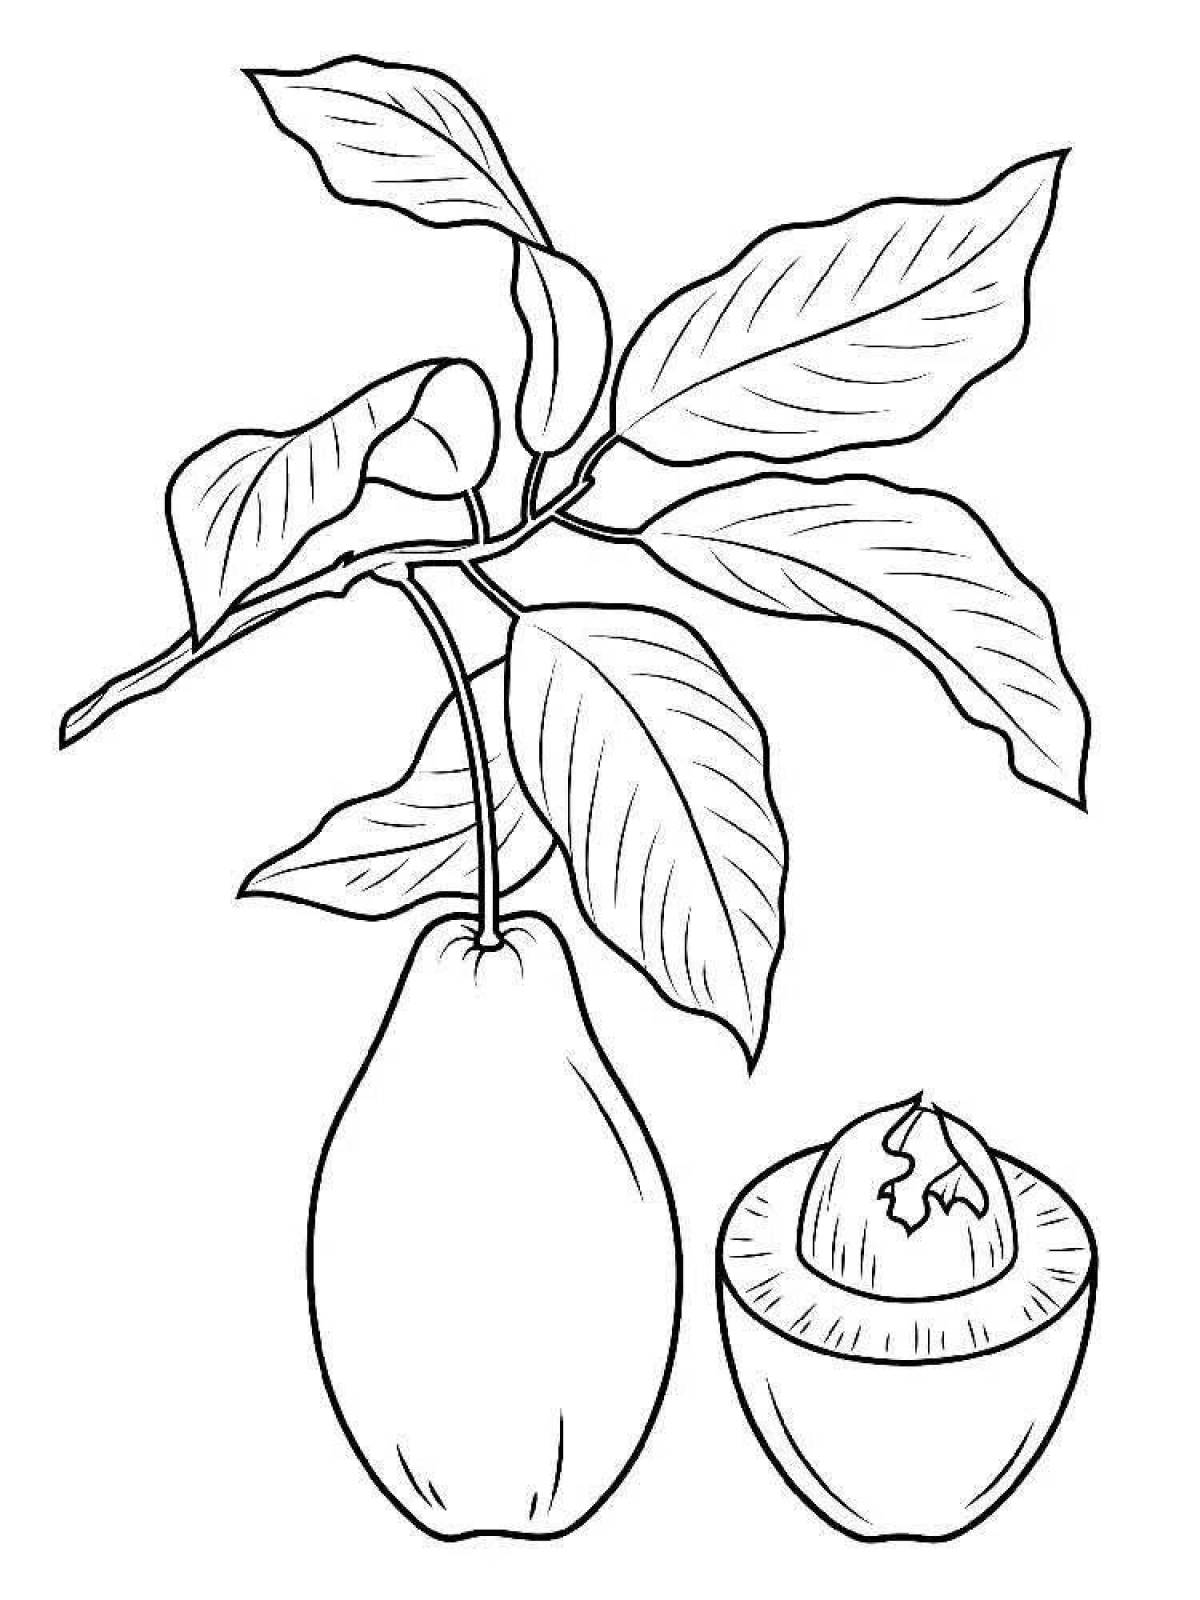 Fun drawing of avocado